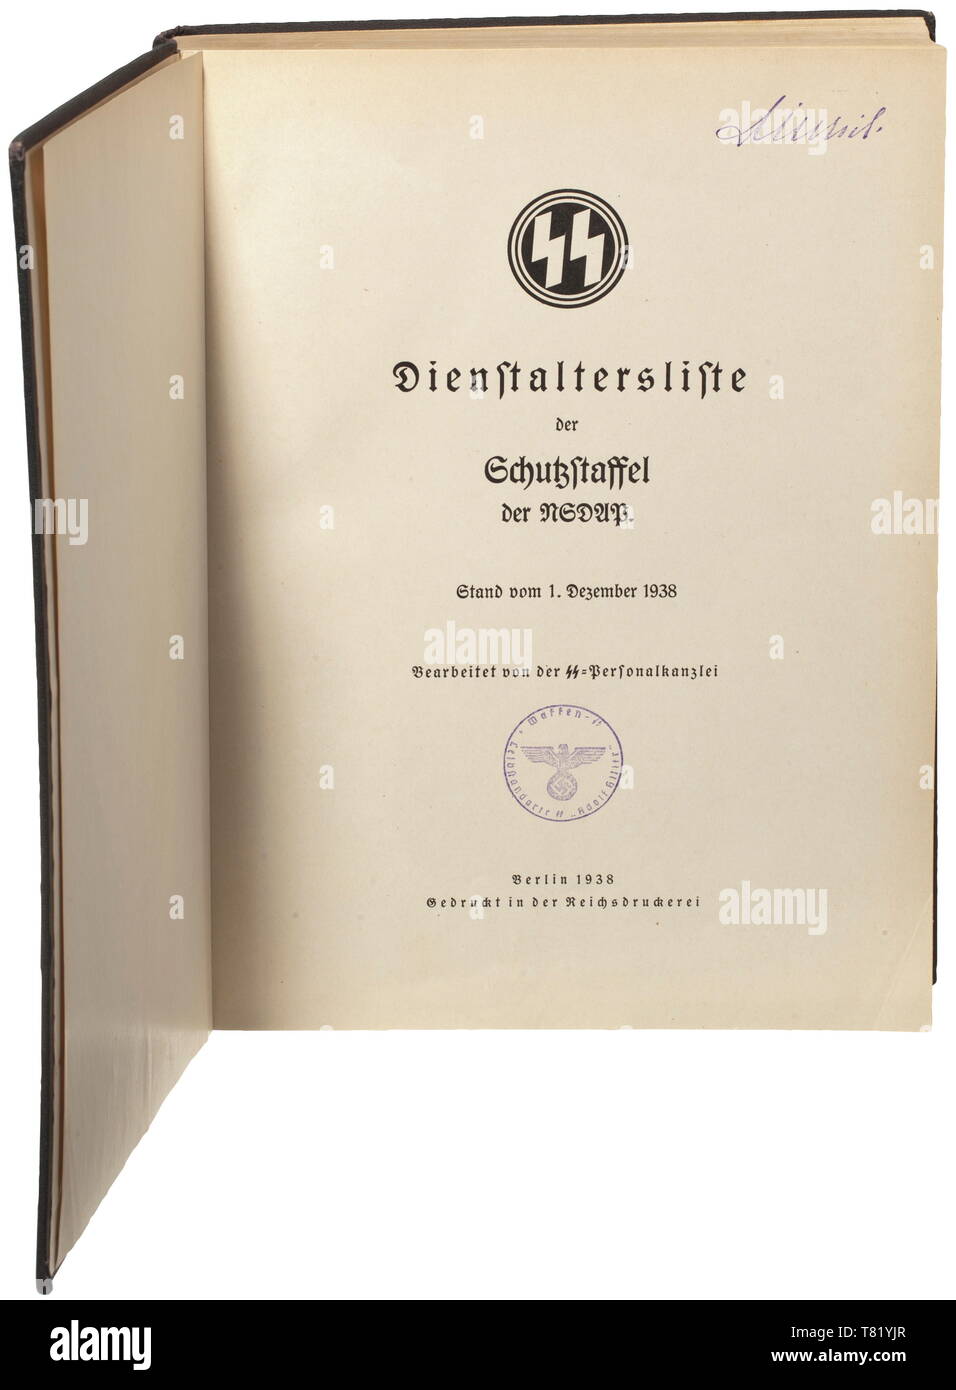 Sepp Dietrich - un funzionario Schutzstaffel preesistenza come elenco di 1 dicembre 1938. Preparato dall' ufficio del personale del Reichsführer-SS. Circa 13.800 ufficiali, elencati in base al grado di servizio (Obergruppenführer a Untersturmführer) con informazioni sulla posizione ufficiale, party- e SS numeri, data di nascita e la data di ogni promozione, Totenkopf Ring award, Reichsführer onore spada award, Ordine di sangue ecc. È incluso un elenco di quelle ufficiali che sono stati addestrati al Führer scuole, aveva abbandonato o sono stati espulsi. Coperchio nero con stampigliato rune bianco e scritte. Risguardo del libretto con l'inventario sta, Editorial-Use-solo Foto Stock